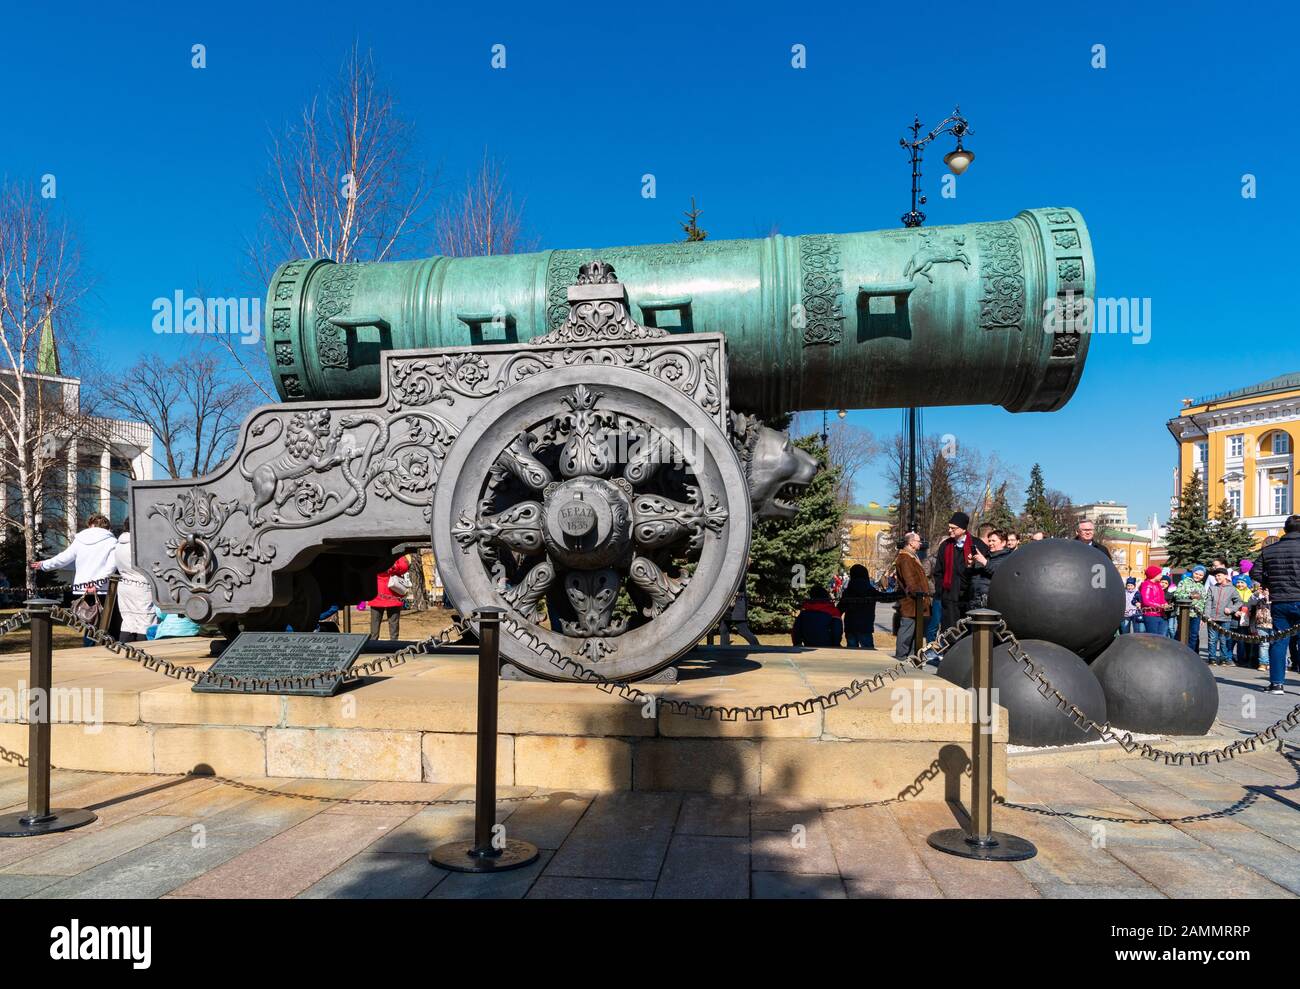 Mosca, RUSSIA-APILI14 2018: Lo Zar Cannon in mostra sui terreni del Cremlino di Mosca. E' un monumento dell'arte di fusione dell'artiglieria russa nel campo dei Foto Stock